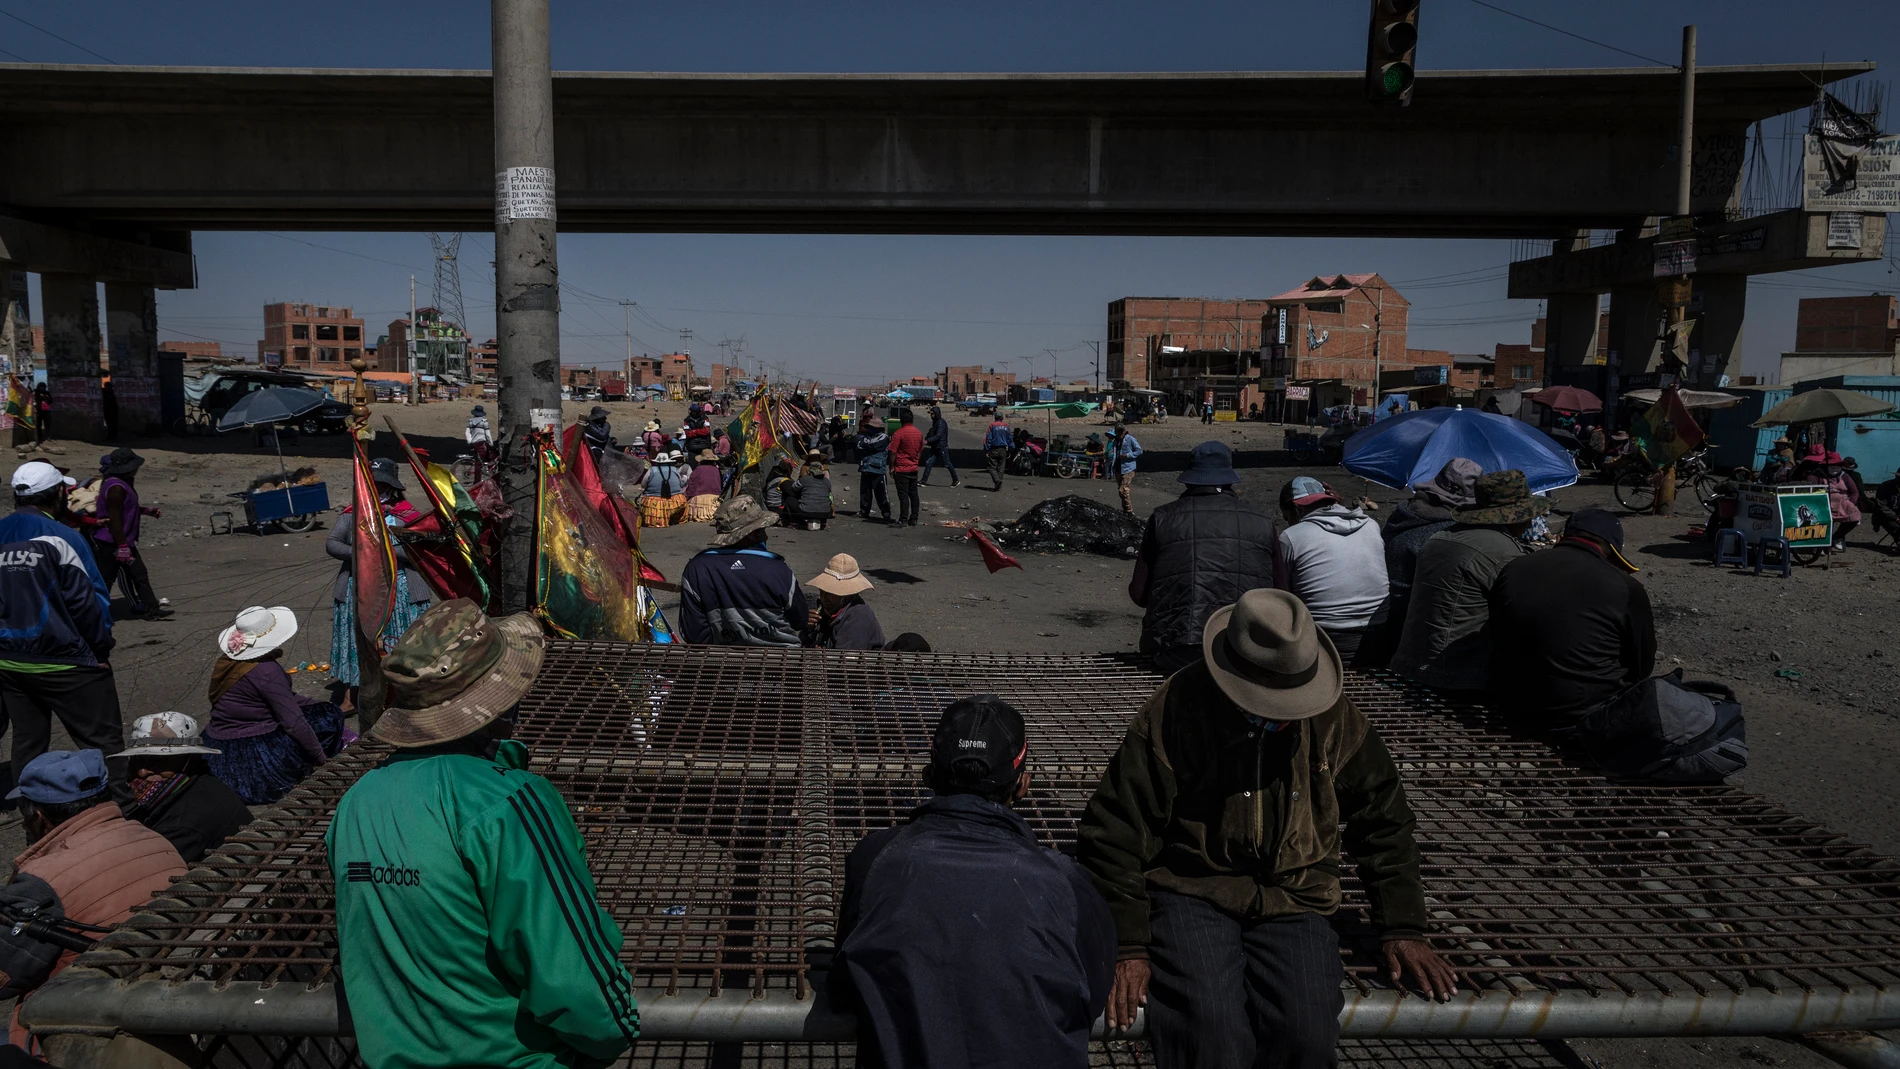 Anti-Government protest in Bolivia